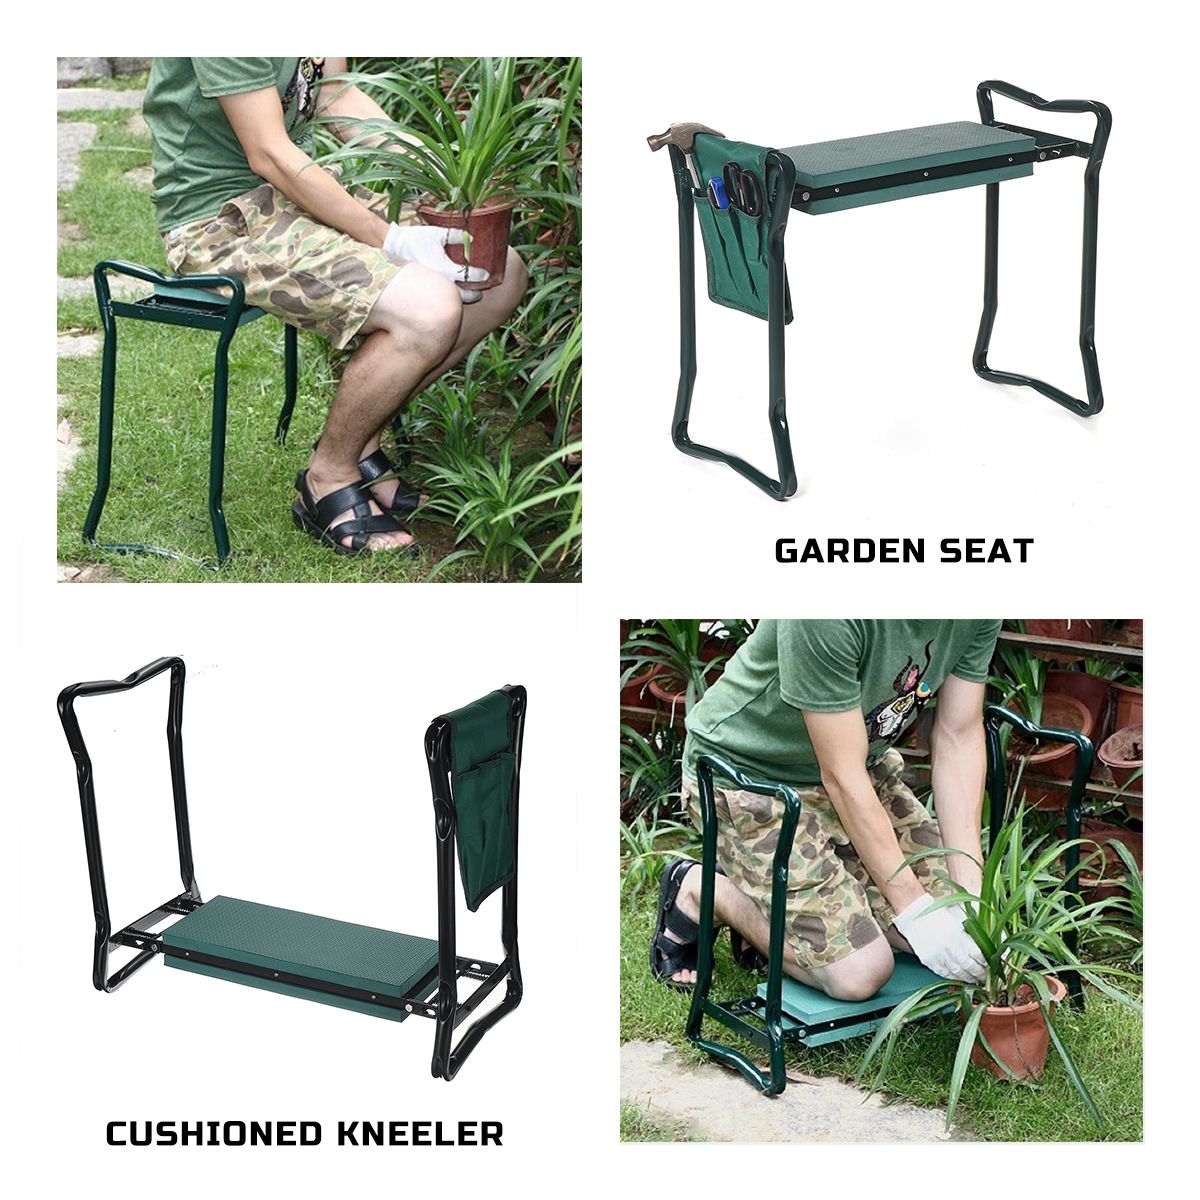 2IN1-Foldaway-Garden-Kneeler-Seat-Kneeling-Bench-EVA-Soft-Pad-Stool-W-Outdoor-Pouch-1676177